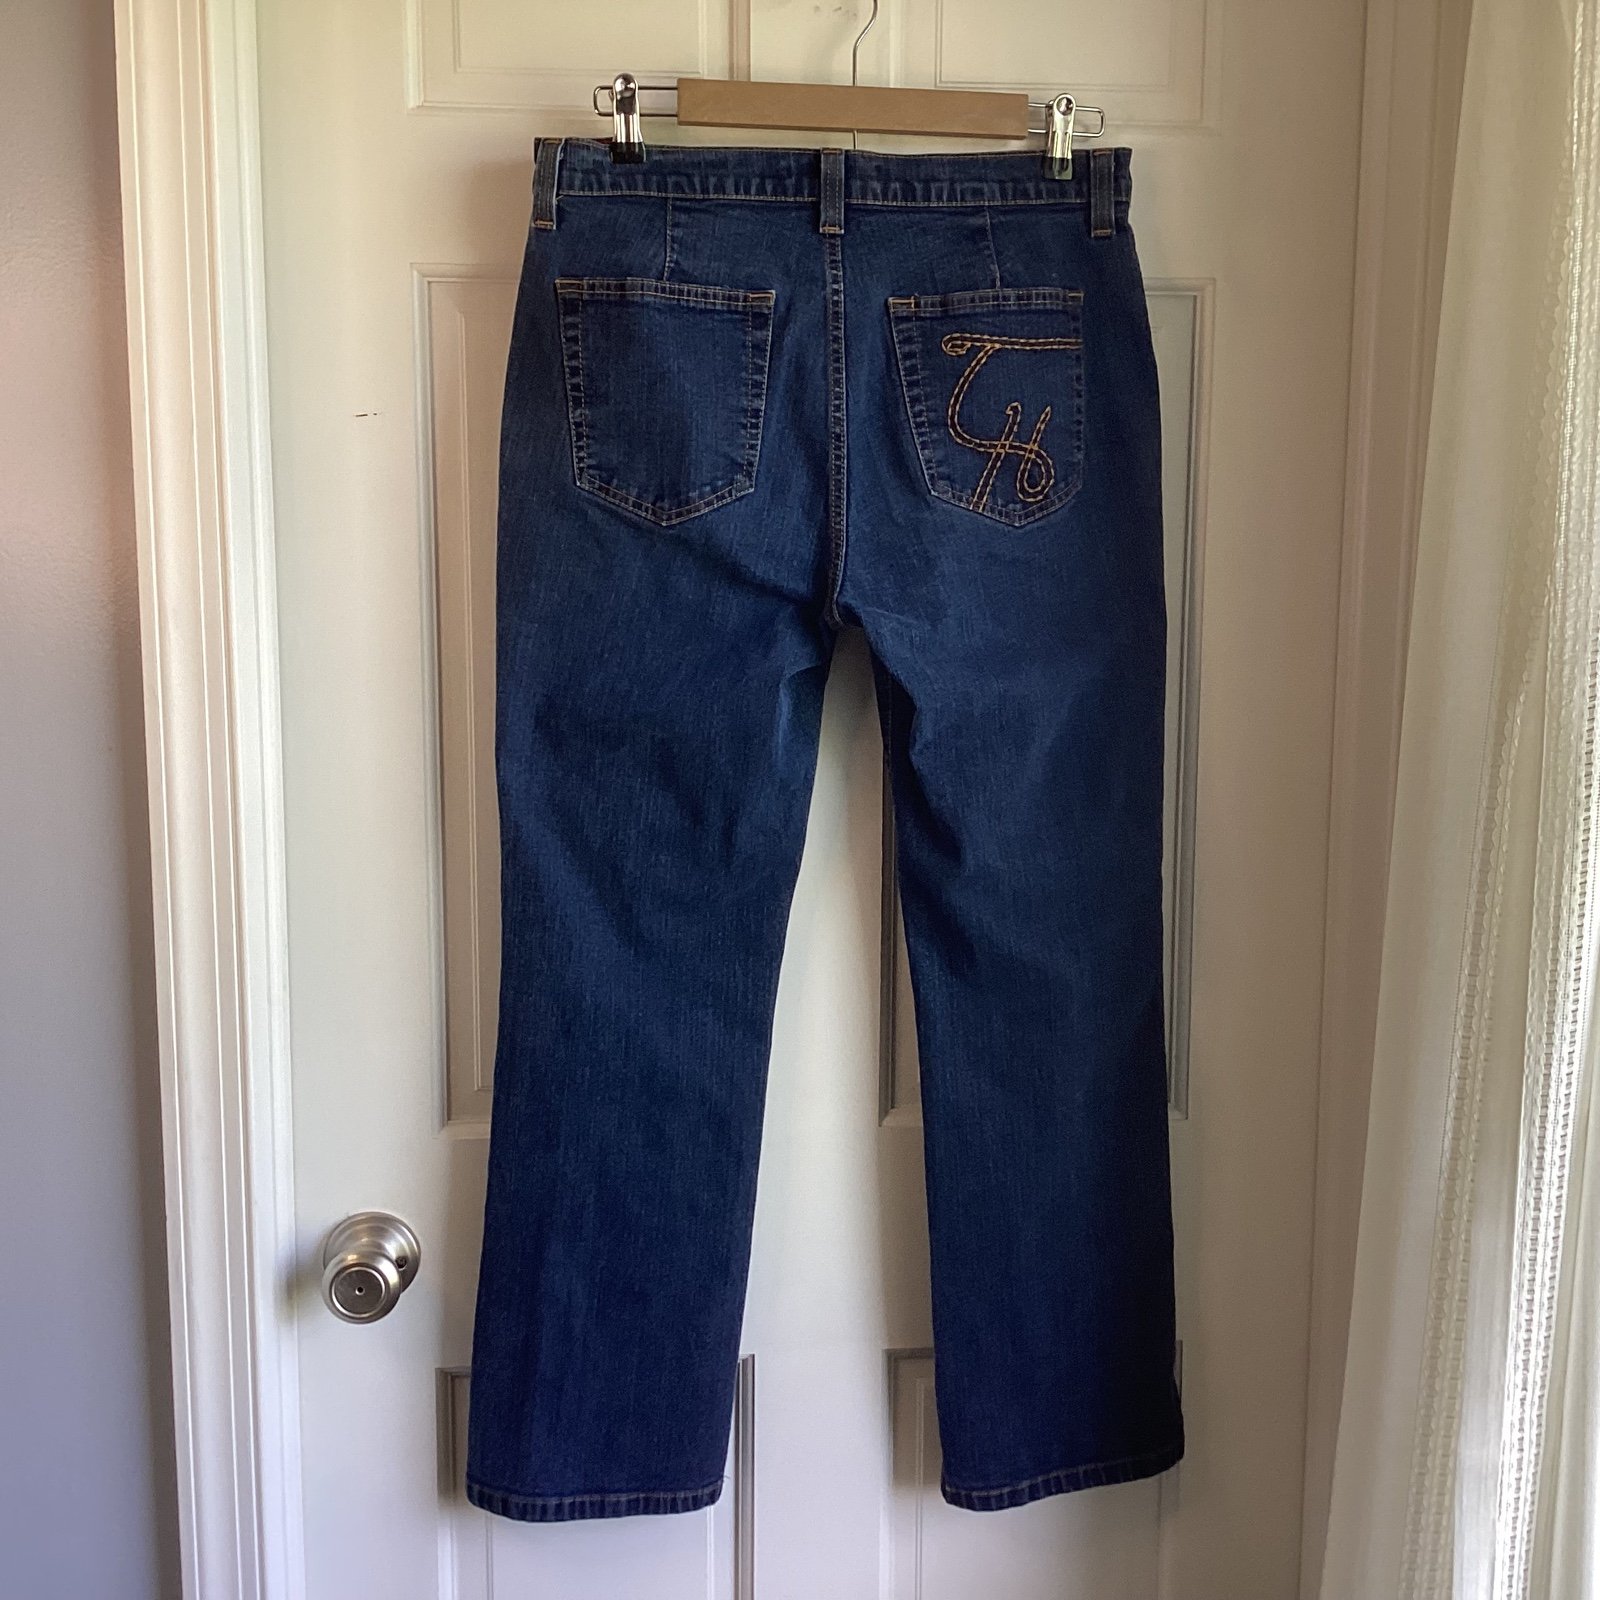 Promotions  Tommy Hilfiger Women’s Straight Leg Denim Jeans.  Size 10 IInJYbhuy Online Shop